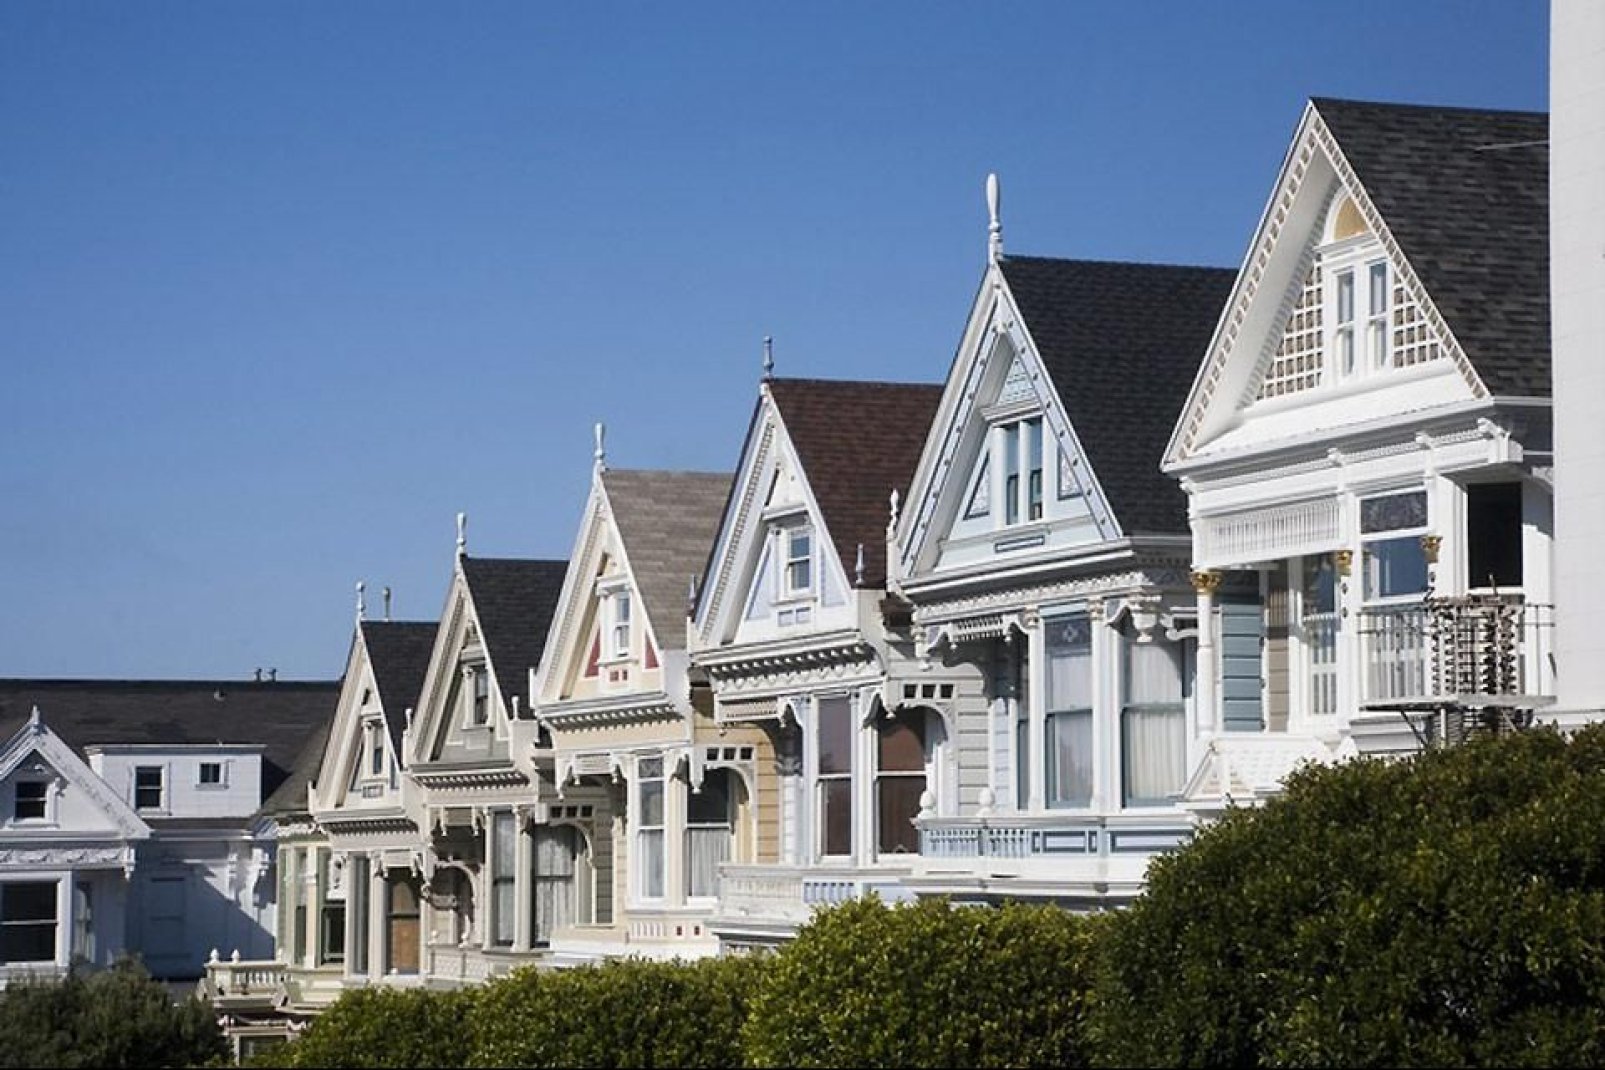 Construidas sobre colinas, las coloridas casas son típicas de esta ciudad californiana.